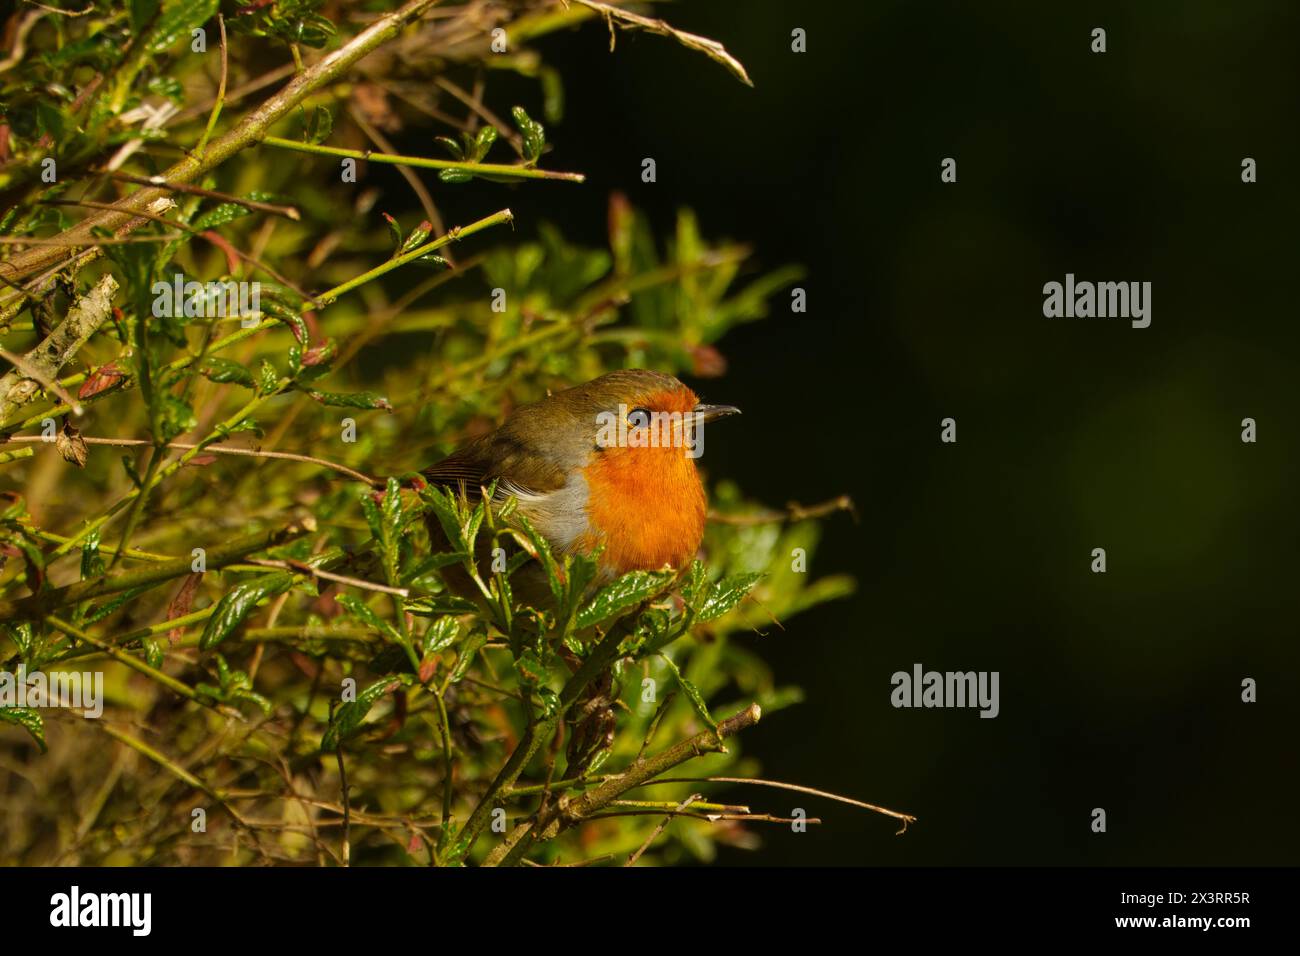 Buntes Europäisches rotkehlchen, das aus dem Busch im Garten auftaucht. Dunkler Hintergrund. Stockfoto